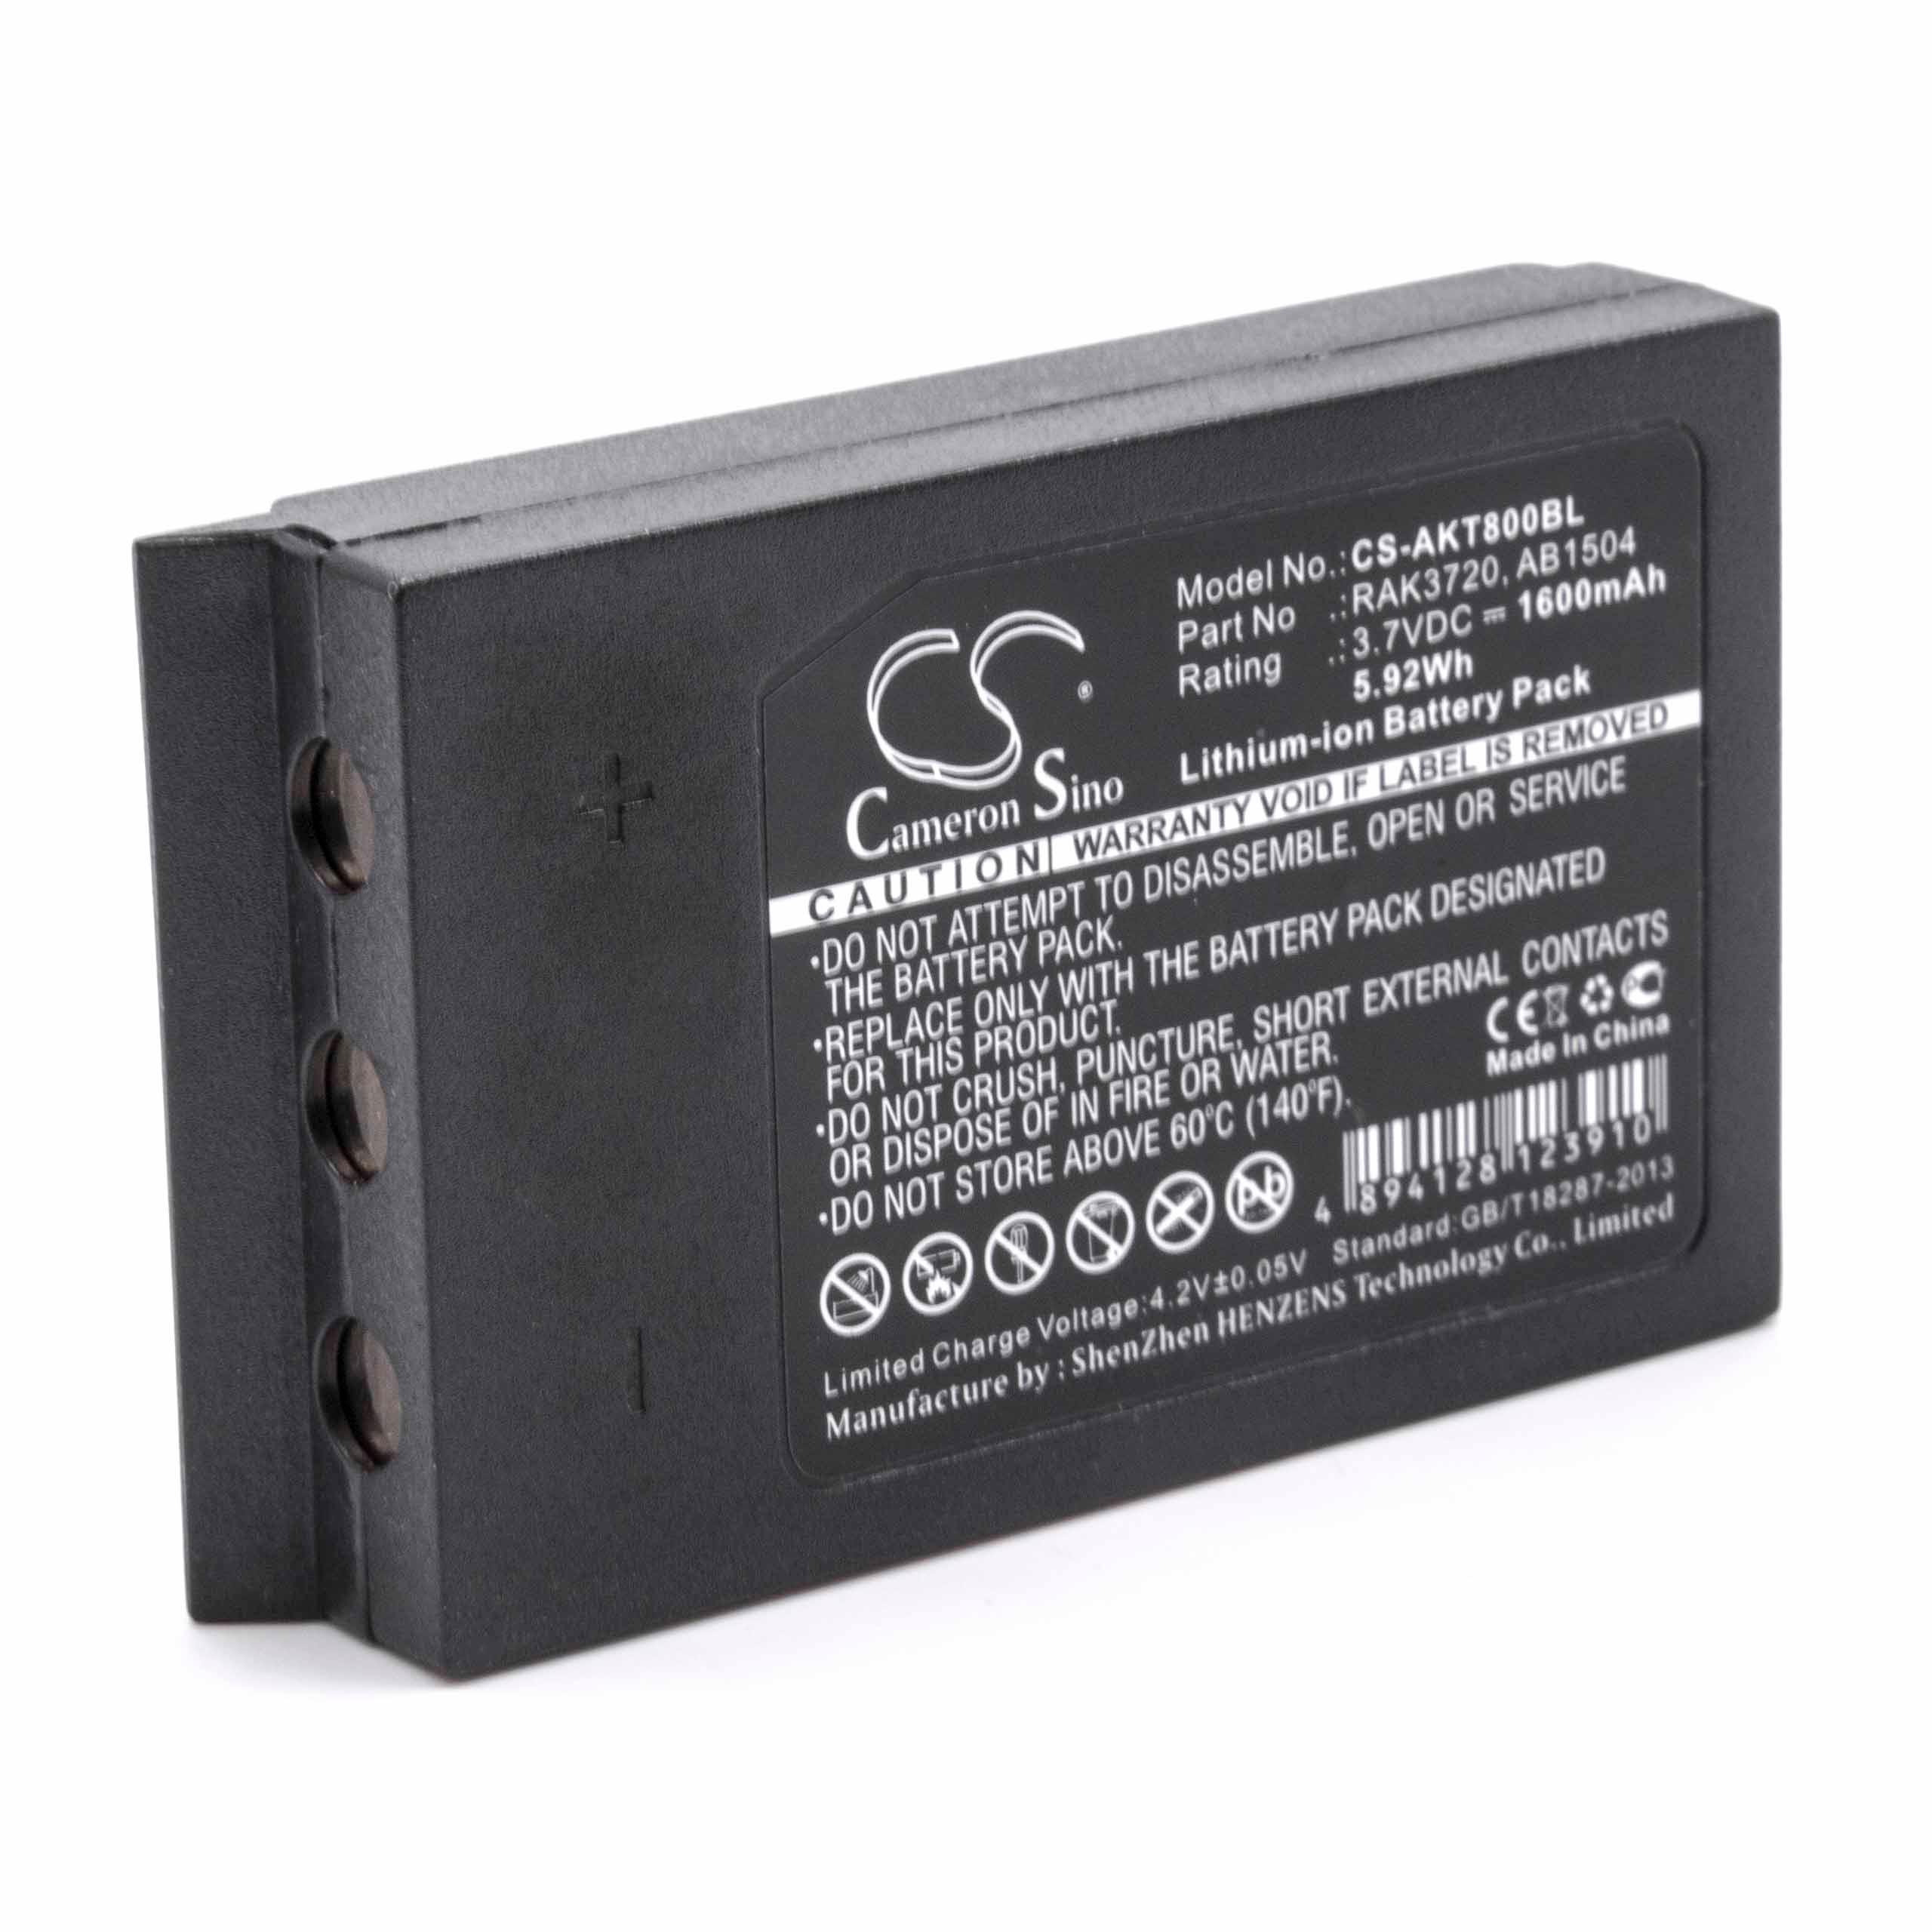 Batterie remplace Akerstroms RAK3720, 933719-000, AB11R, AB1504 pour télécommande - 1600mAh 3,7V Li-ion